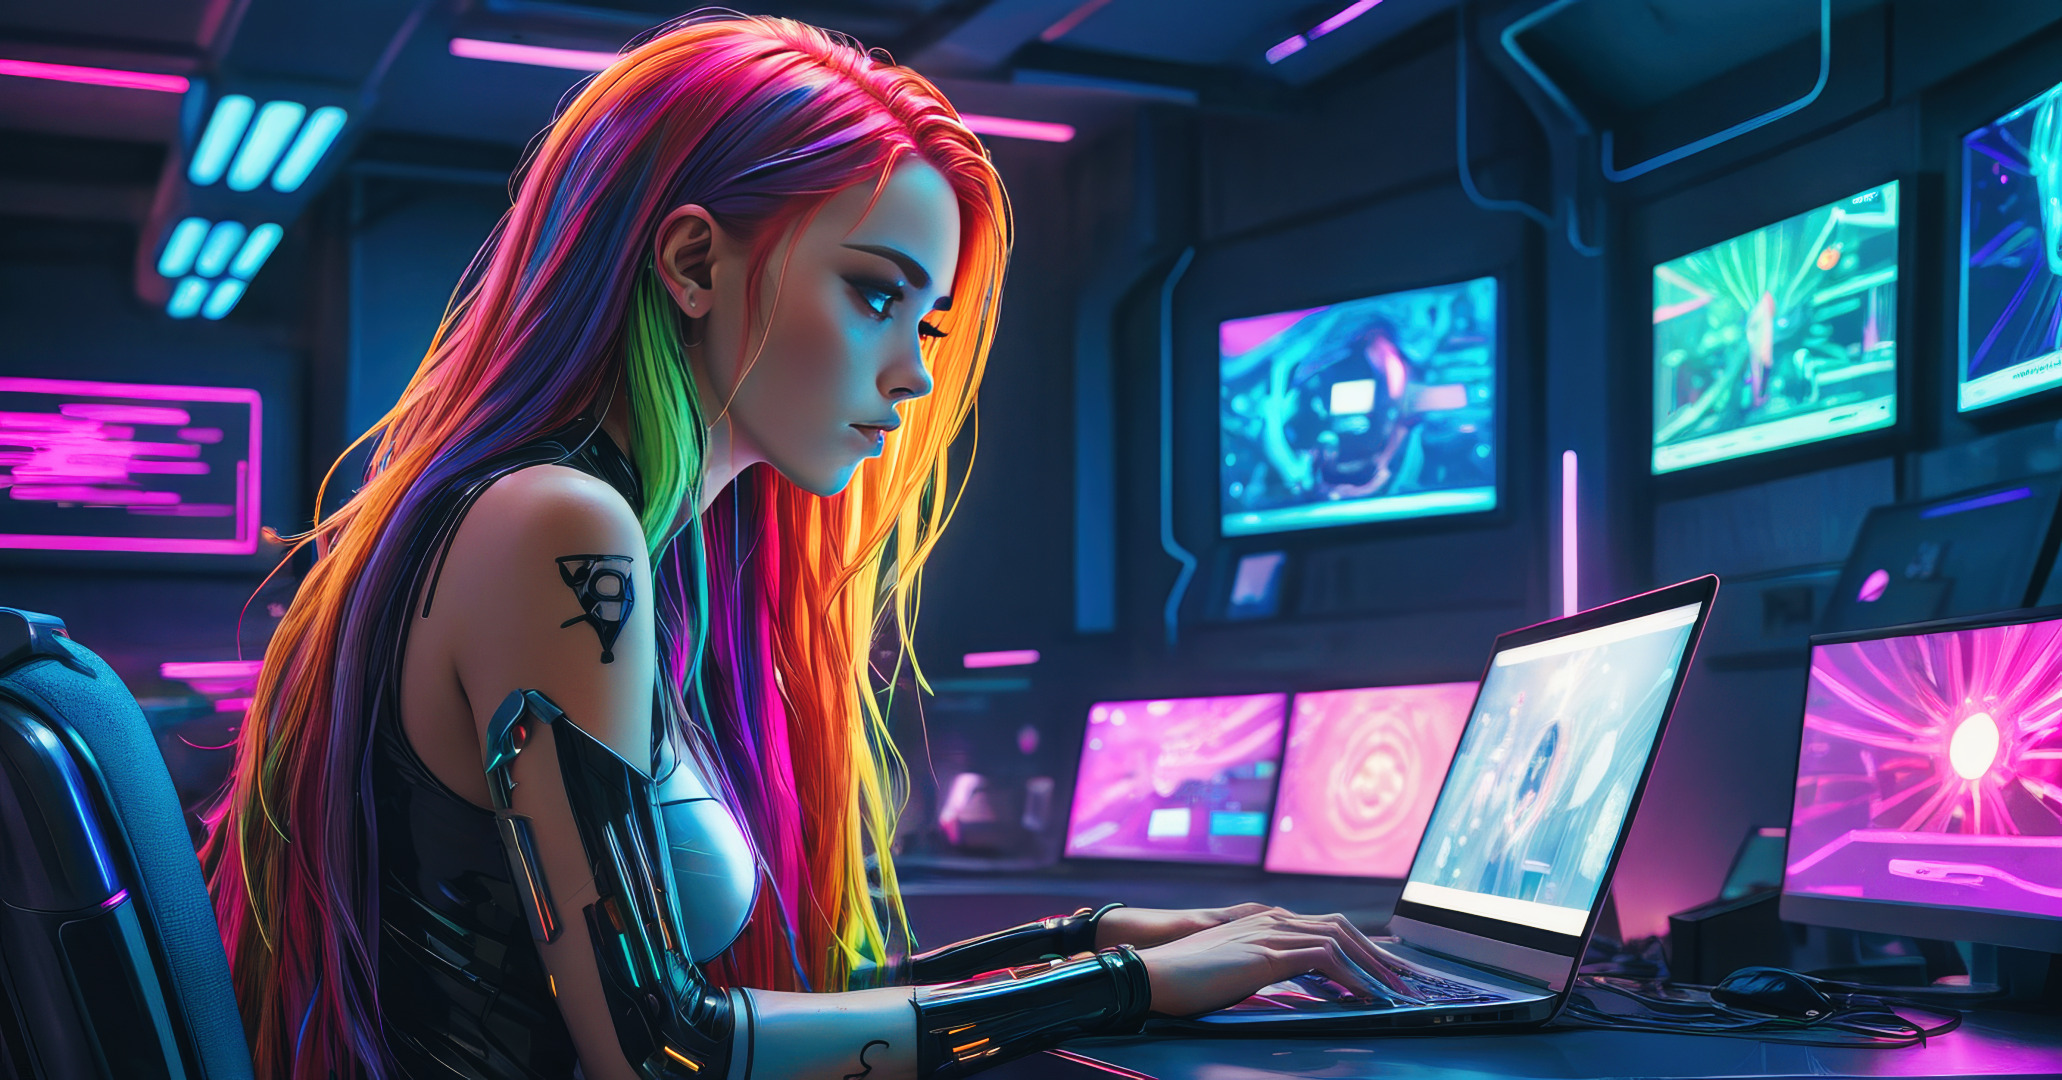 Eine junge Programmiererin mit leuchtend mehrfarbigem Haar sitzt konzentriert vor ihrem Laptop in einem Raum, der von futuristischen Displays erhellt wird. Während sie durch die neonfarbene Beleuchtung der Umgebung noch hervorsticht, lernt sie über "Variablen und Datentypen" in Python, um ihre Fähigkeiten in der Softwareentwicklung zu schärfen.